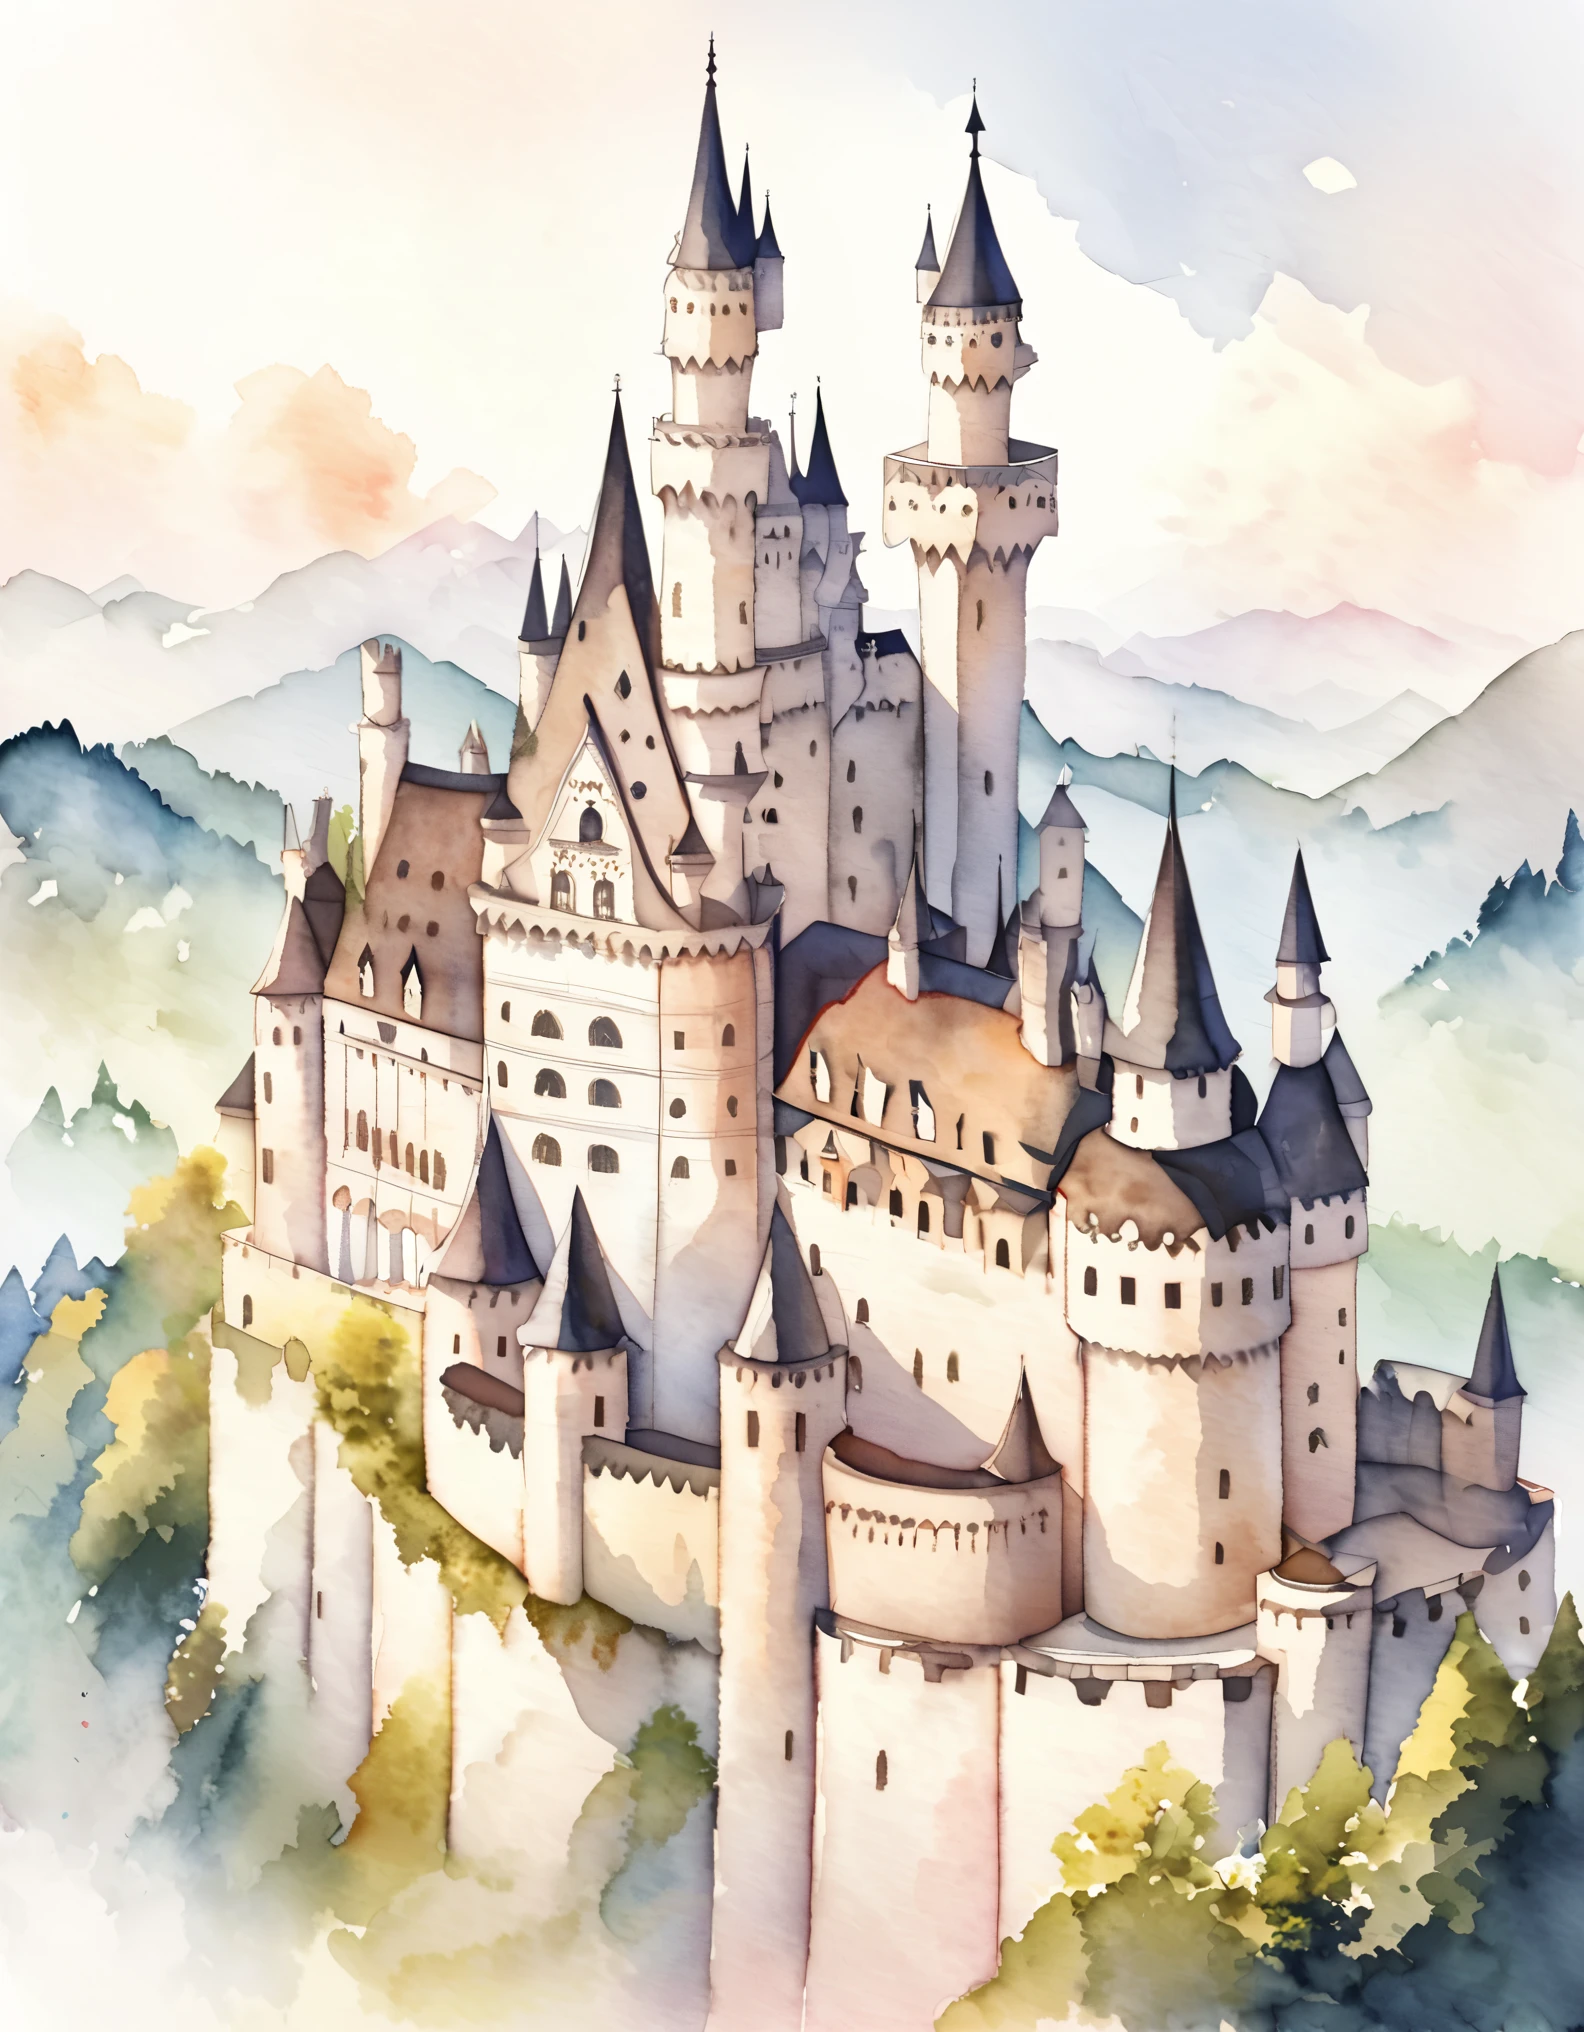 新天鹅堡, 外墙由砖砌成，表面覆盖白色石灰石., 一座浪漫的城堡，献给一位追逐未实现梦想的国王, 美丽的城堡, 德国的城堡, 建在山上, 水彩:1.2, 奇异而精致, 就像儿童书中的插图一样&#39;的书, 柔和的笔触, 暗淡, 淡淡的色彩营造出梦幻般的外观.